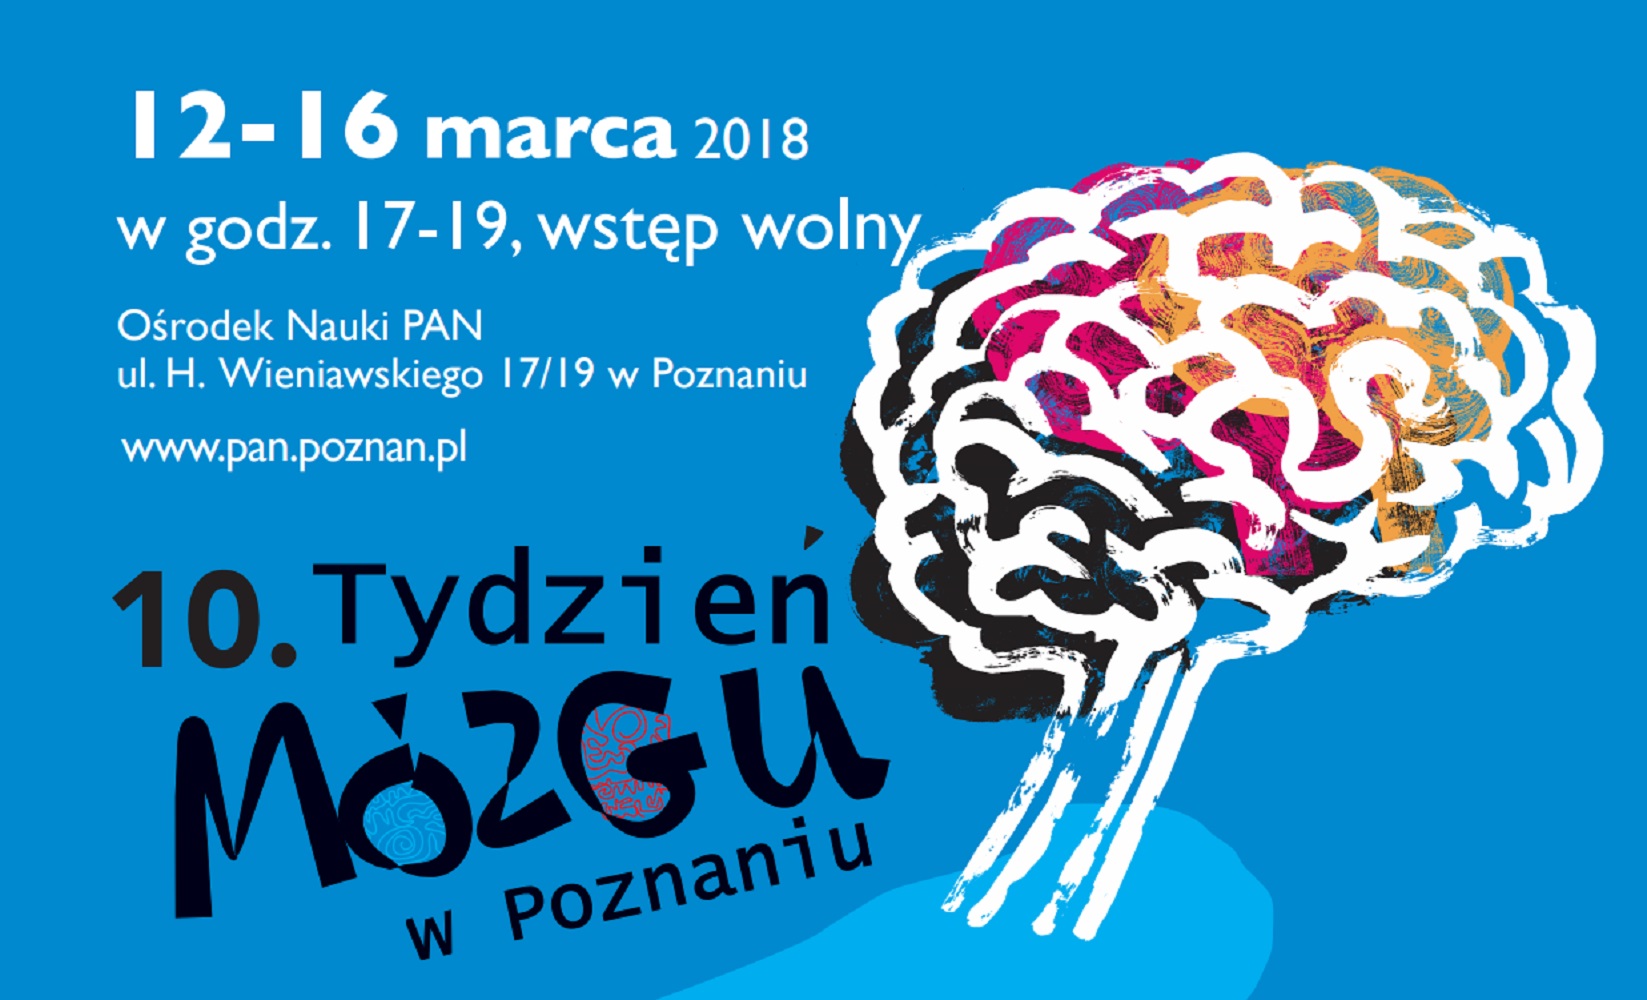 Tydzień Mózgu rozpoczął się 12 marca/fot.pan.poznan.pl - grafika artykułu